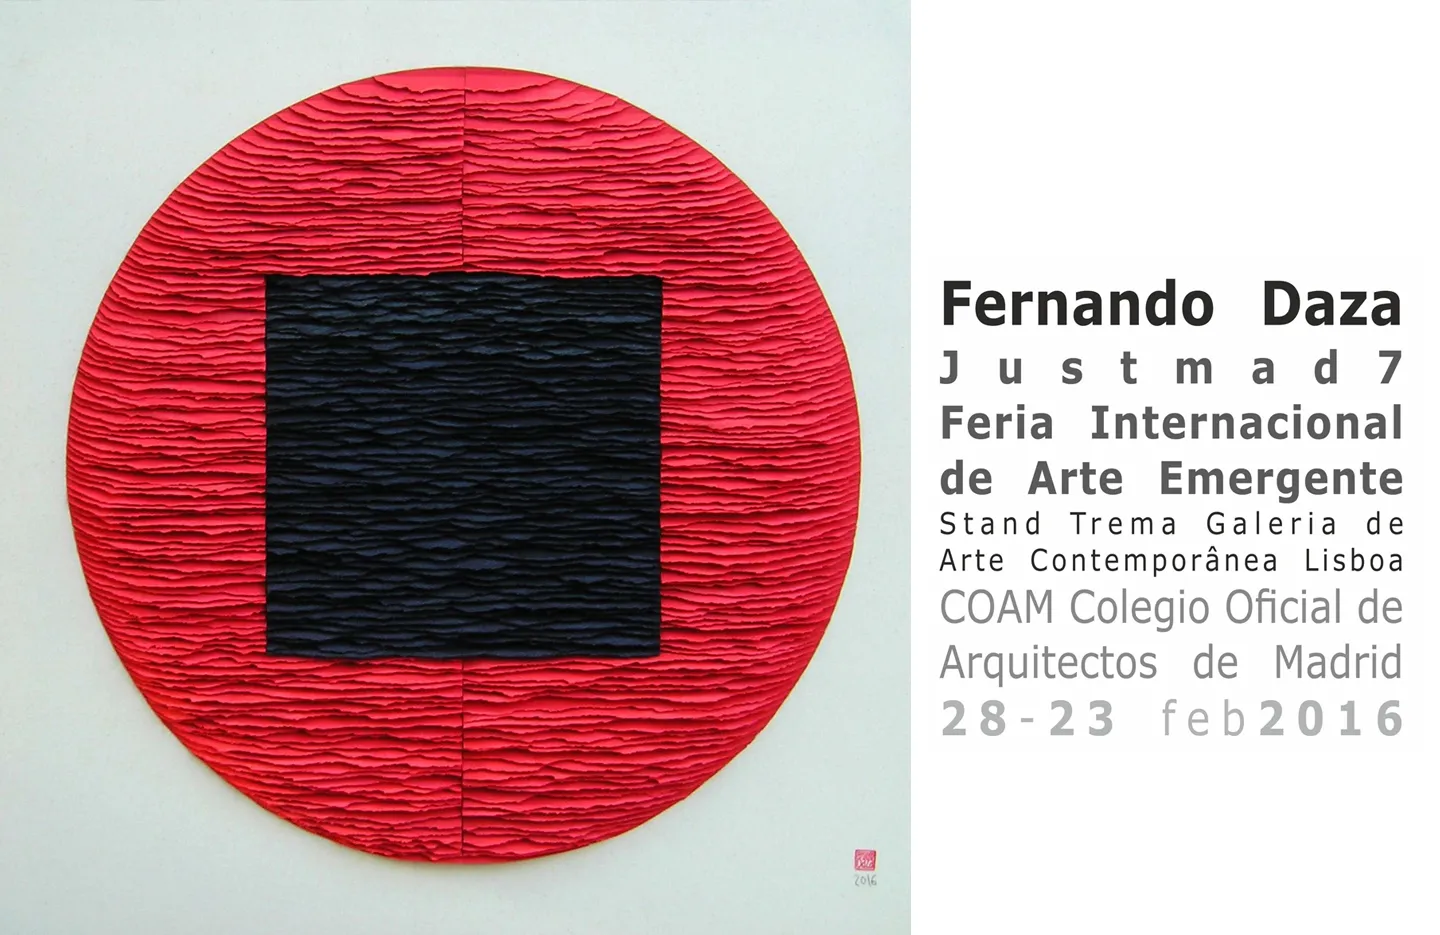 Fernando Daza Visual Artist - evento arte emergente